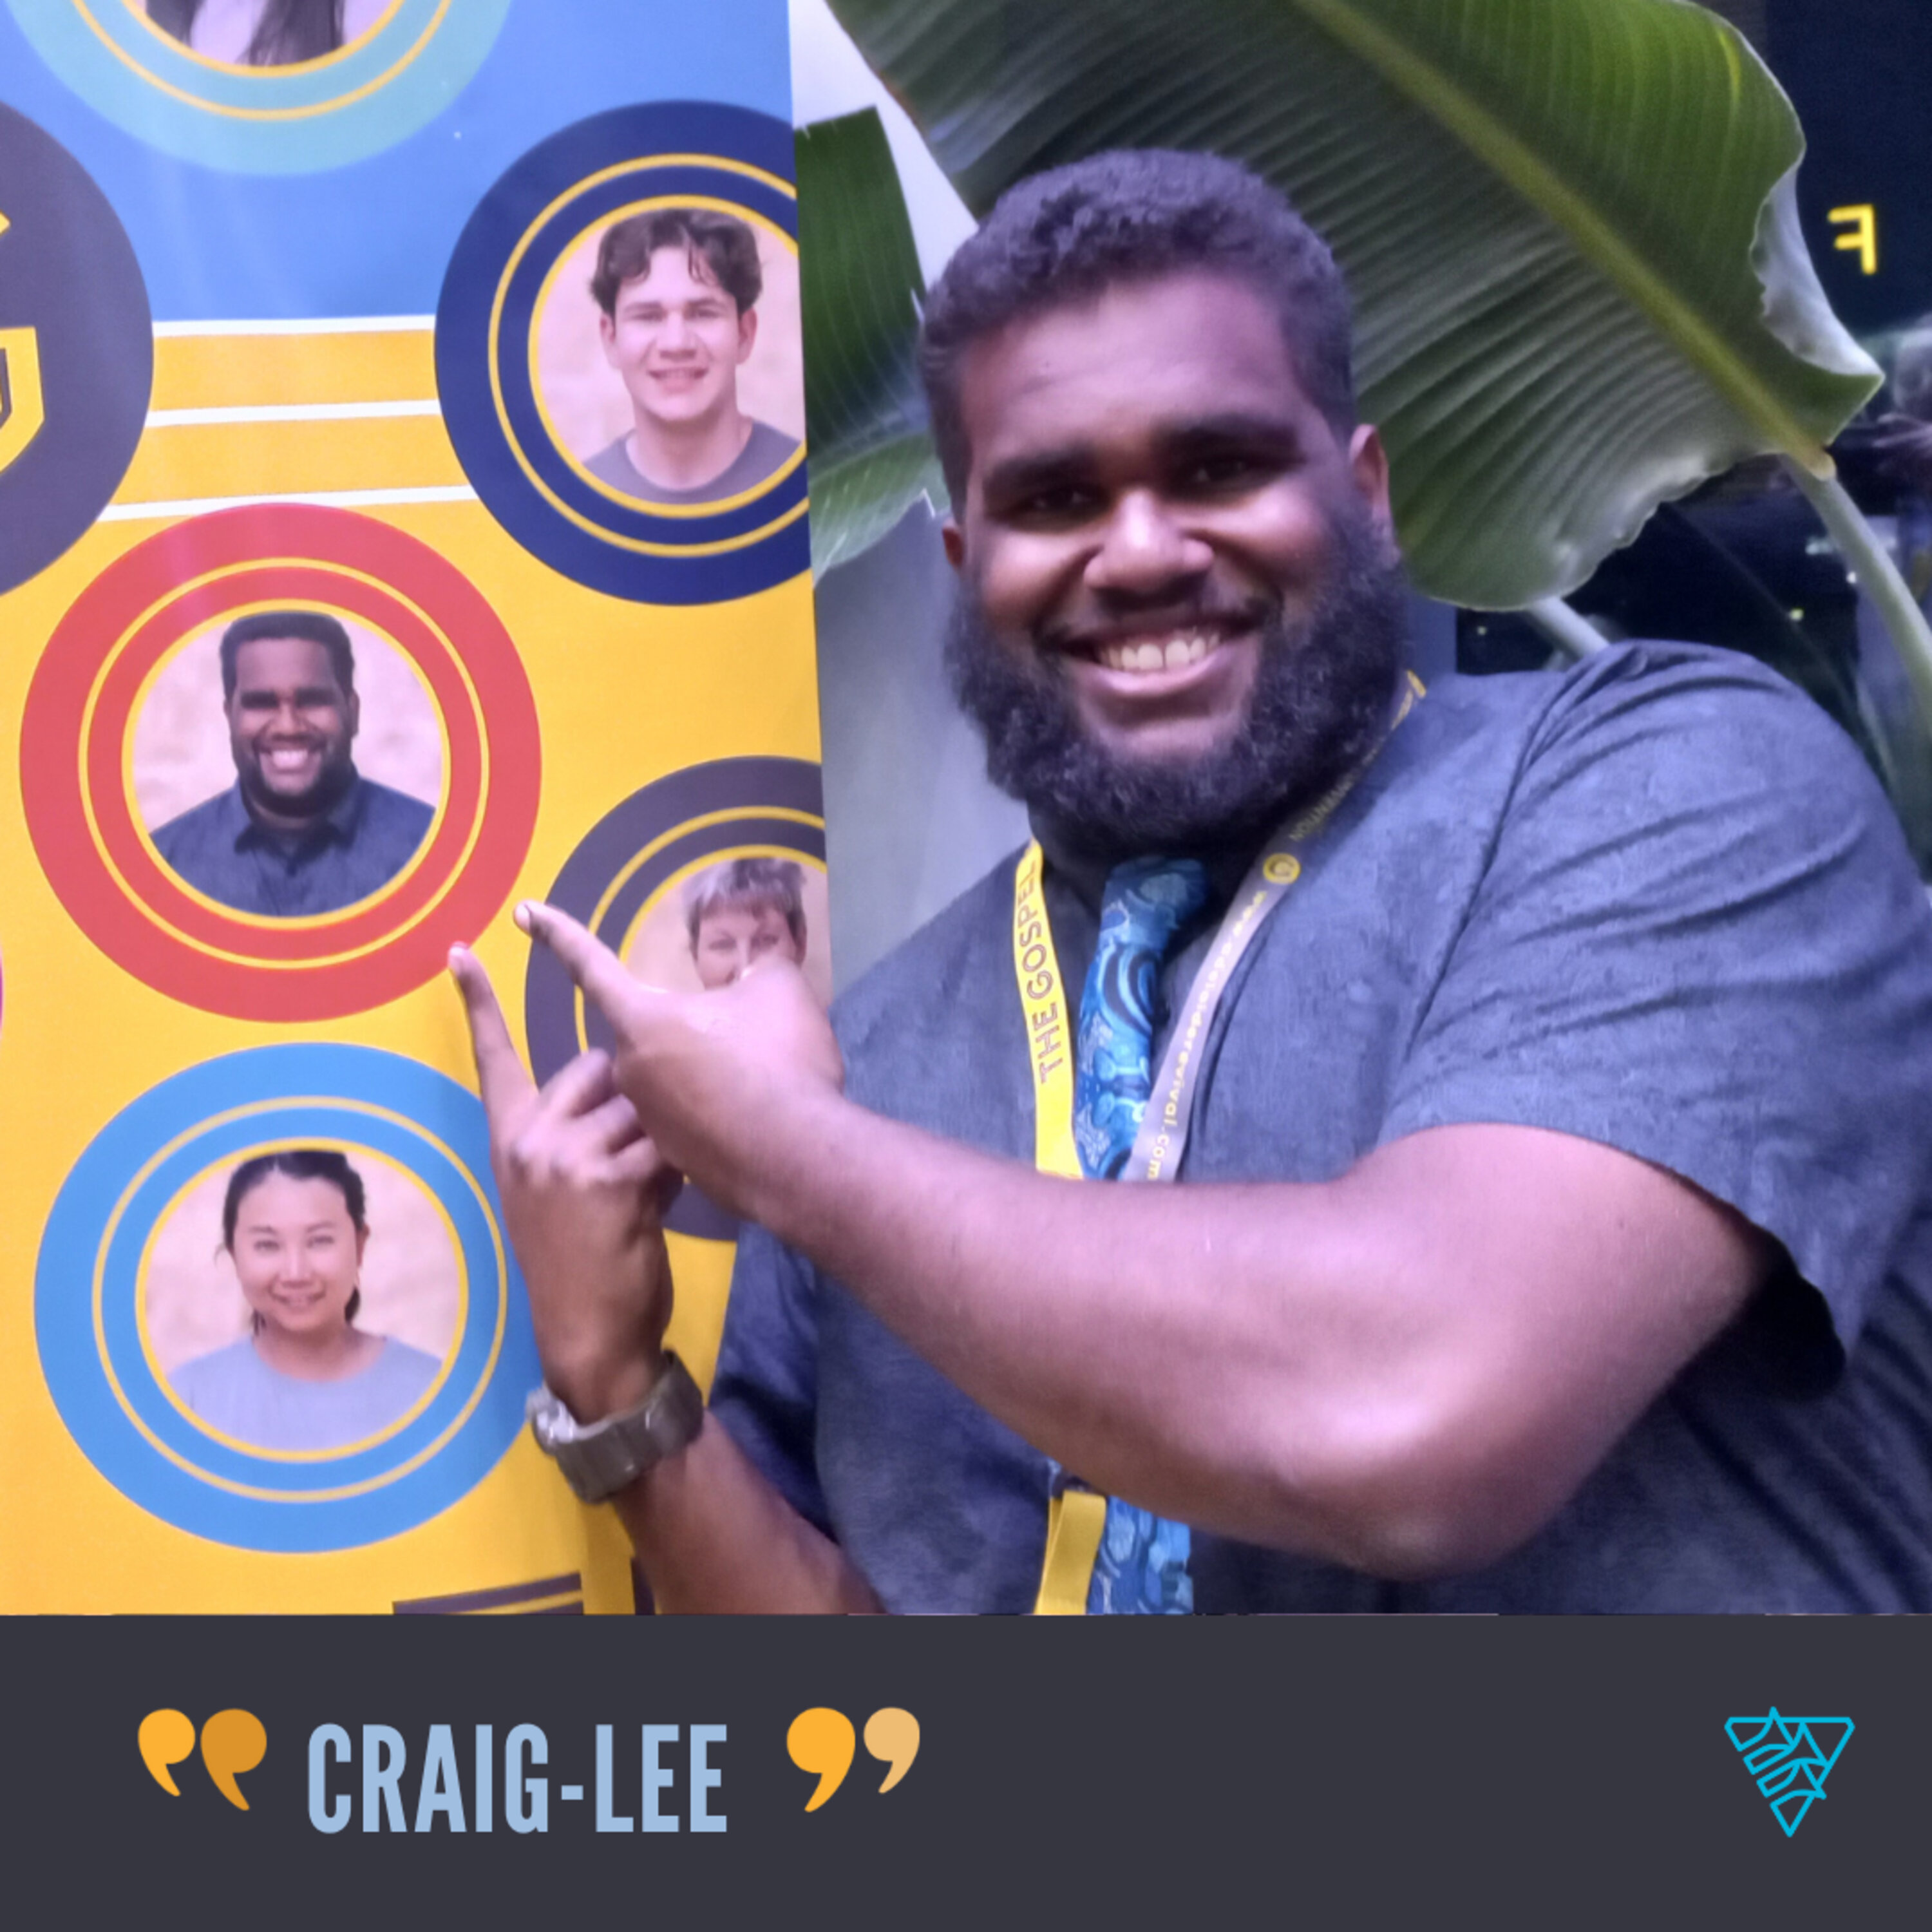 Craig-Lee’s miracle ear